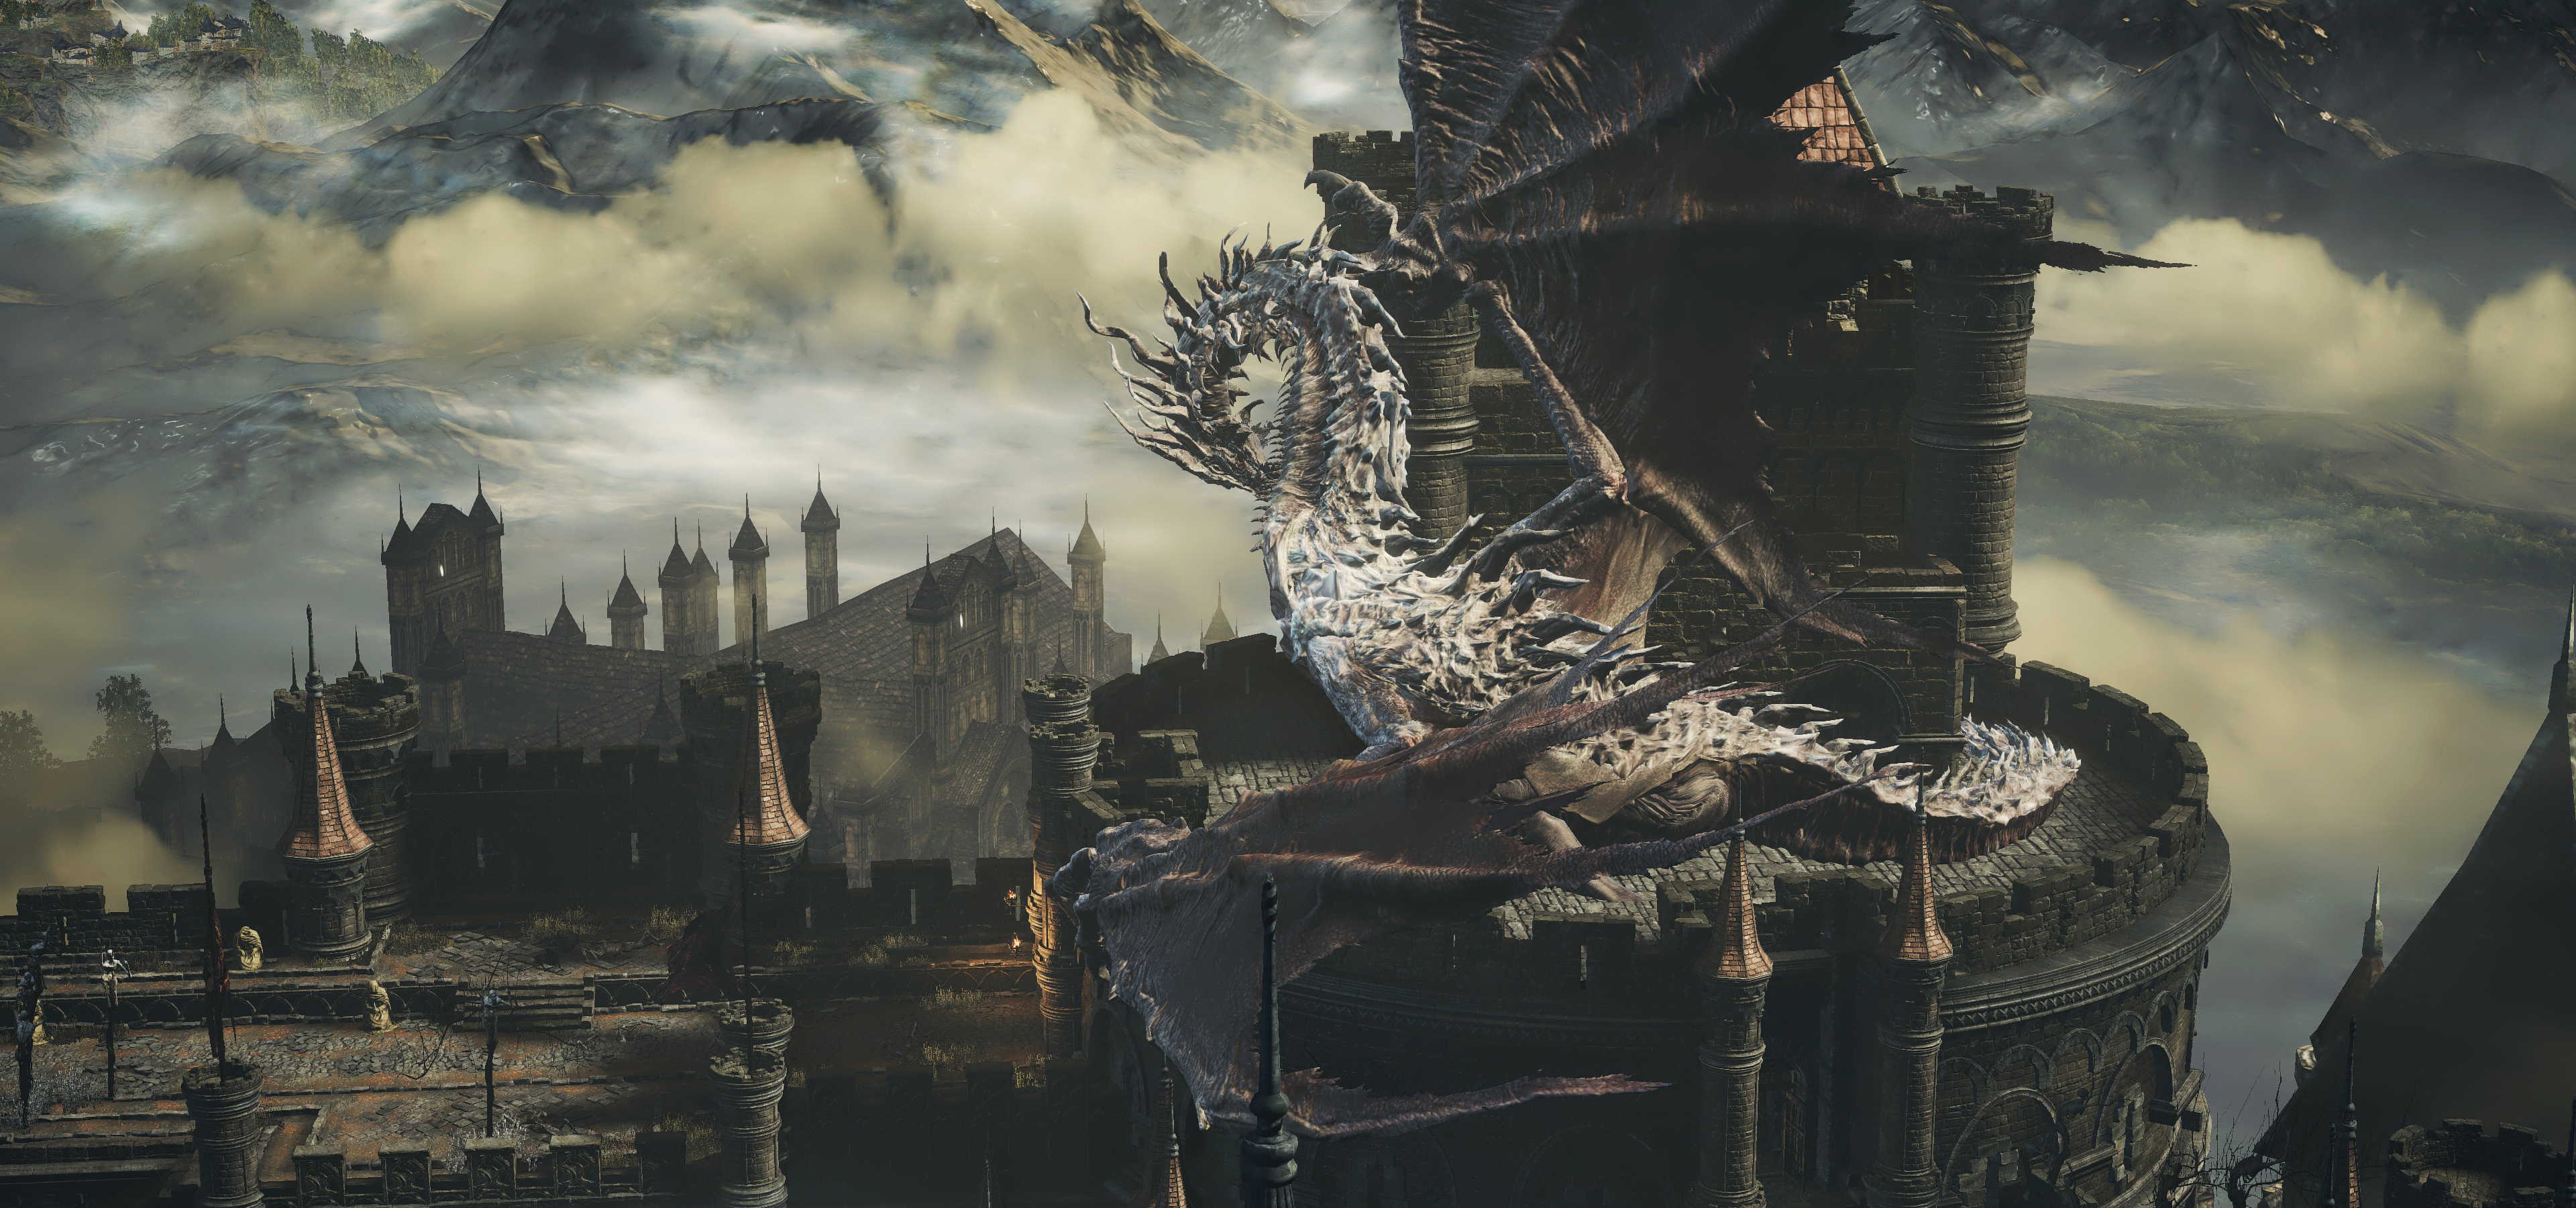 Dark Souls Iii Dragon Wallpaper Resolution 3840x1800 Id Wallha Com